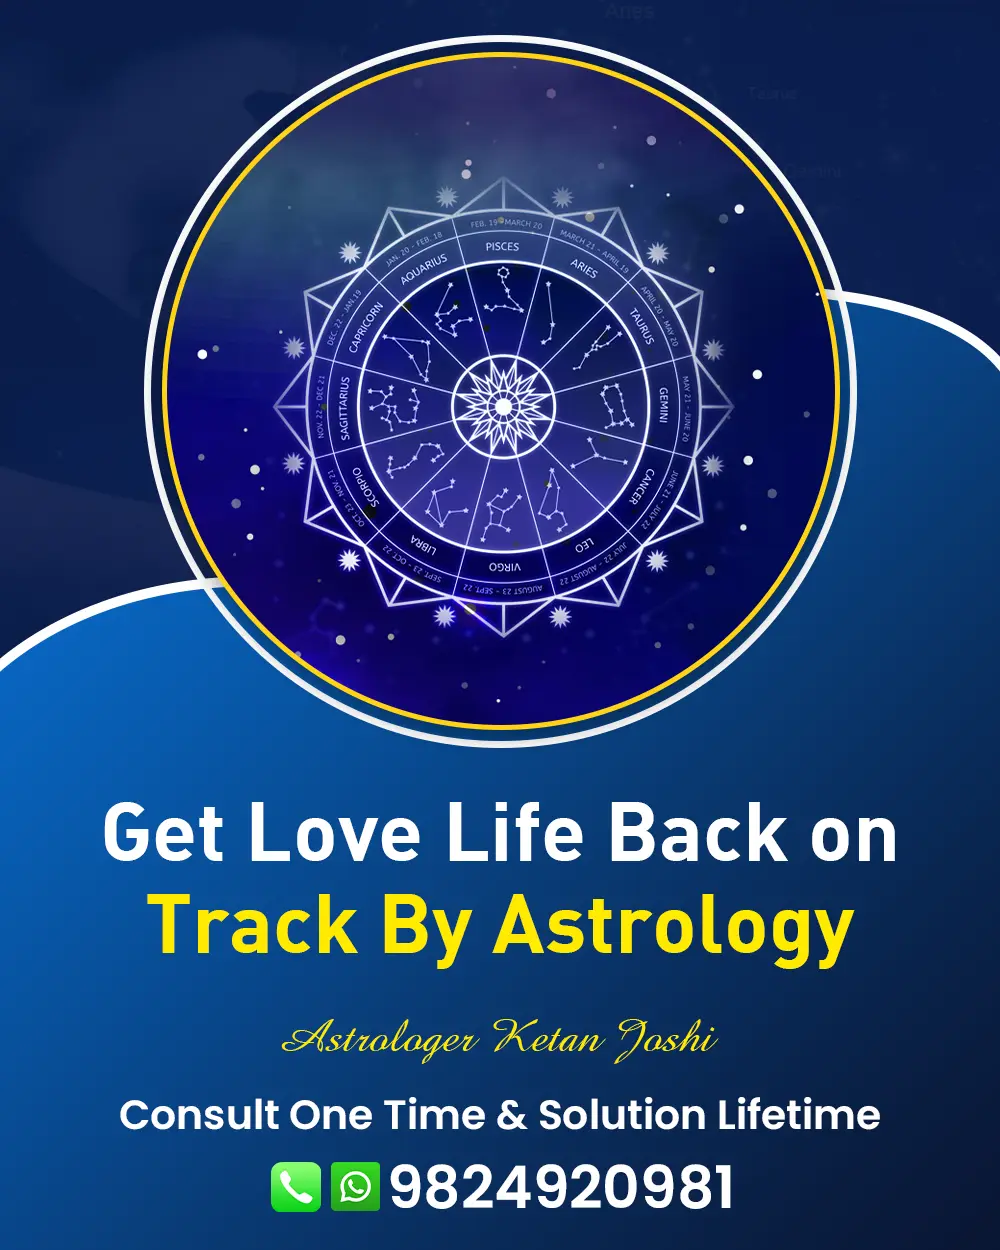 Love Problem Astrologer In Viramgam